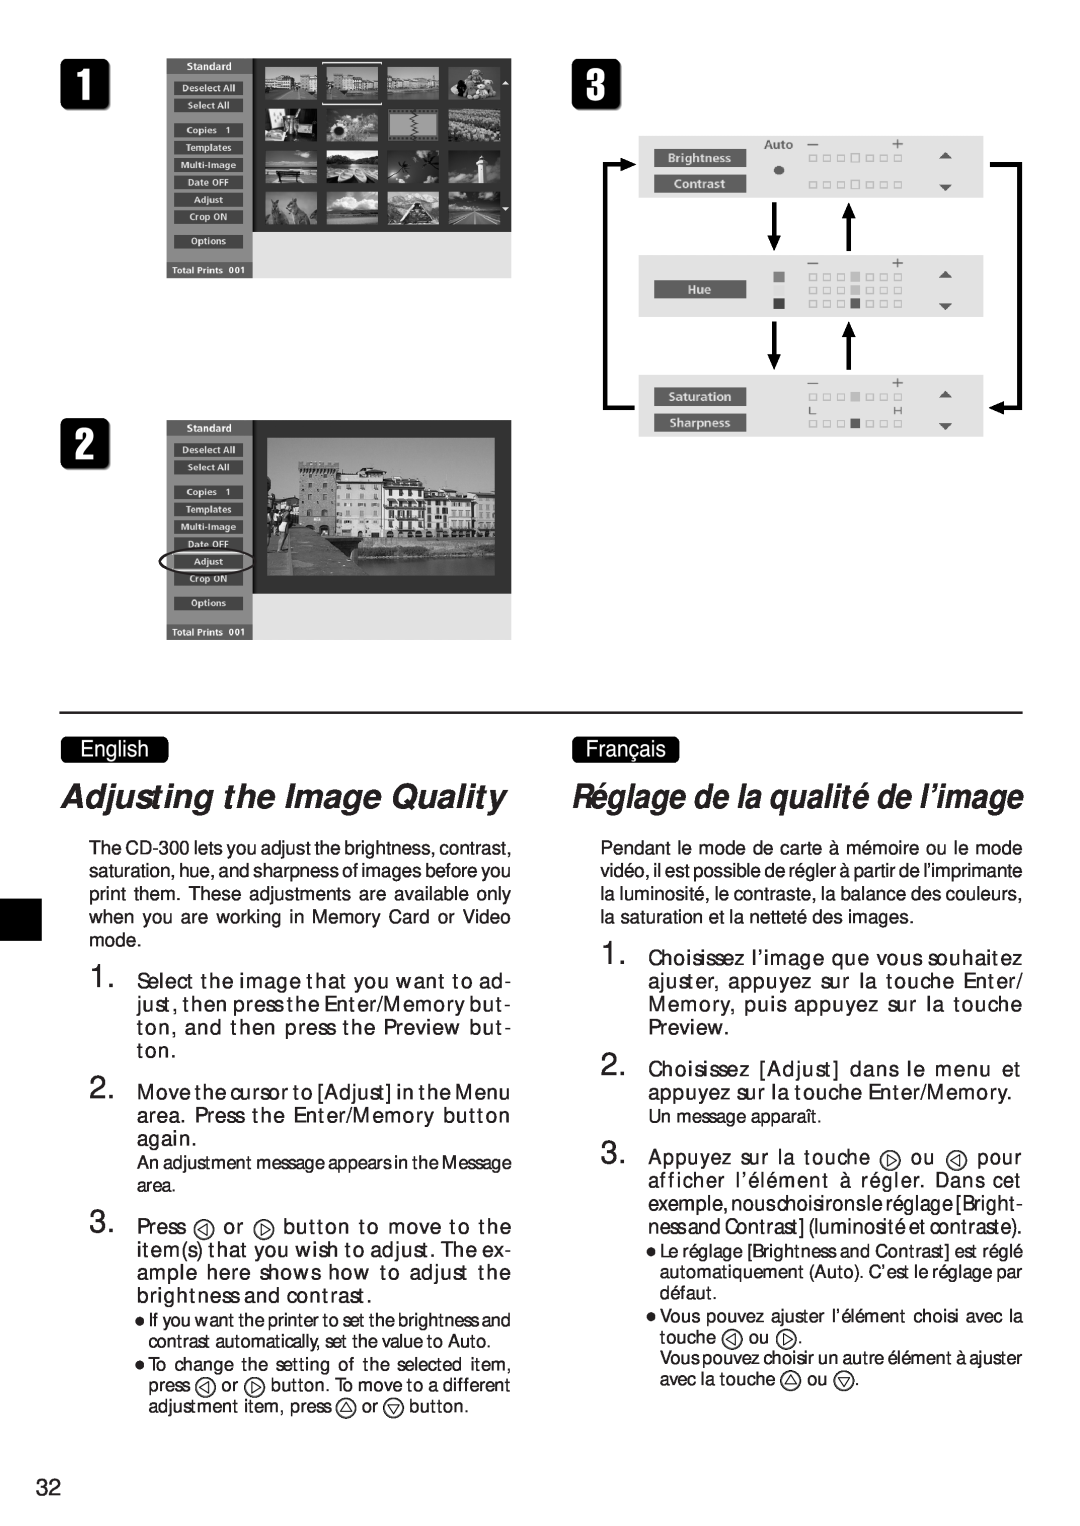 Canon CD-300 manual Adjusting the Image Quality, Réglage de la qualité de l’image 